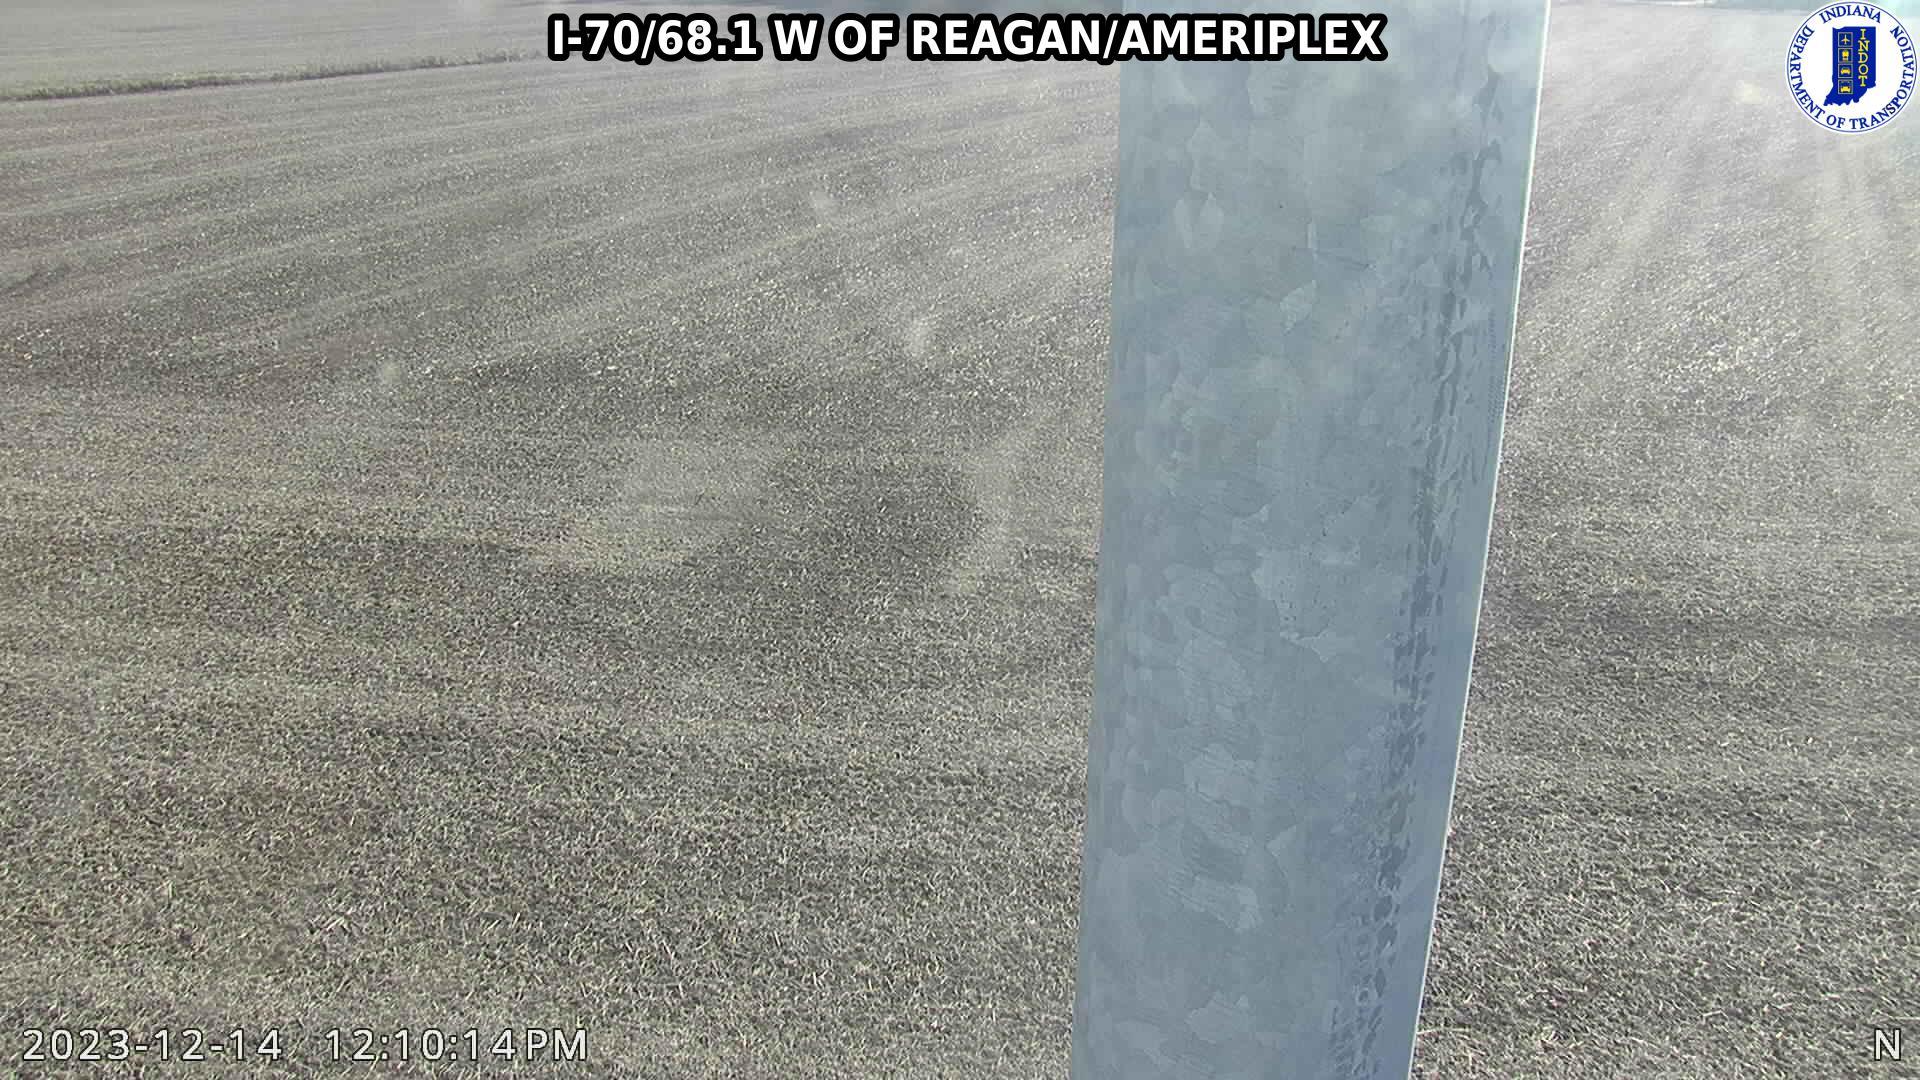 Plainfield: I-70: I-70/68.1 W OF REAGAN/AMERIPLEX Traffic Camera